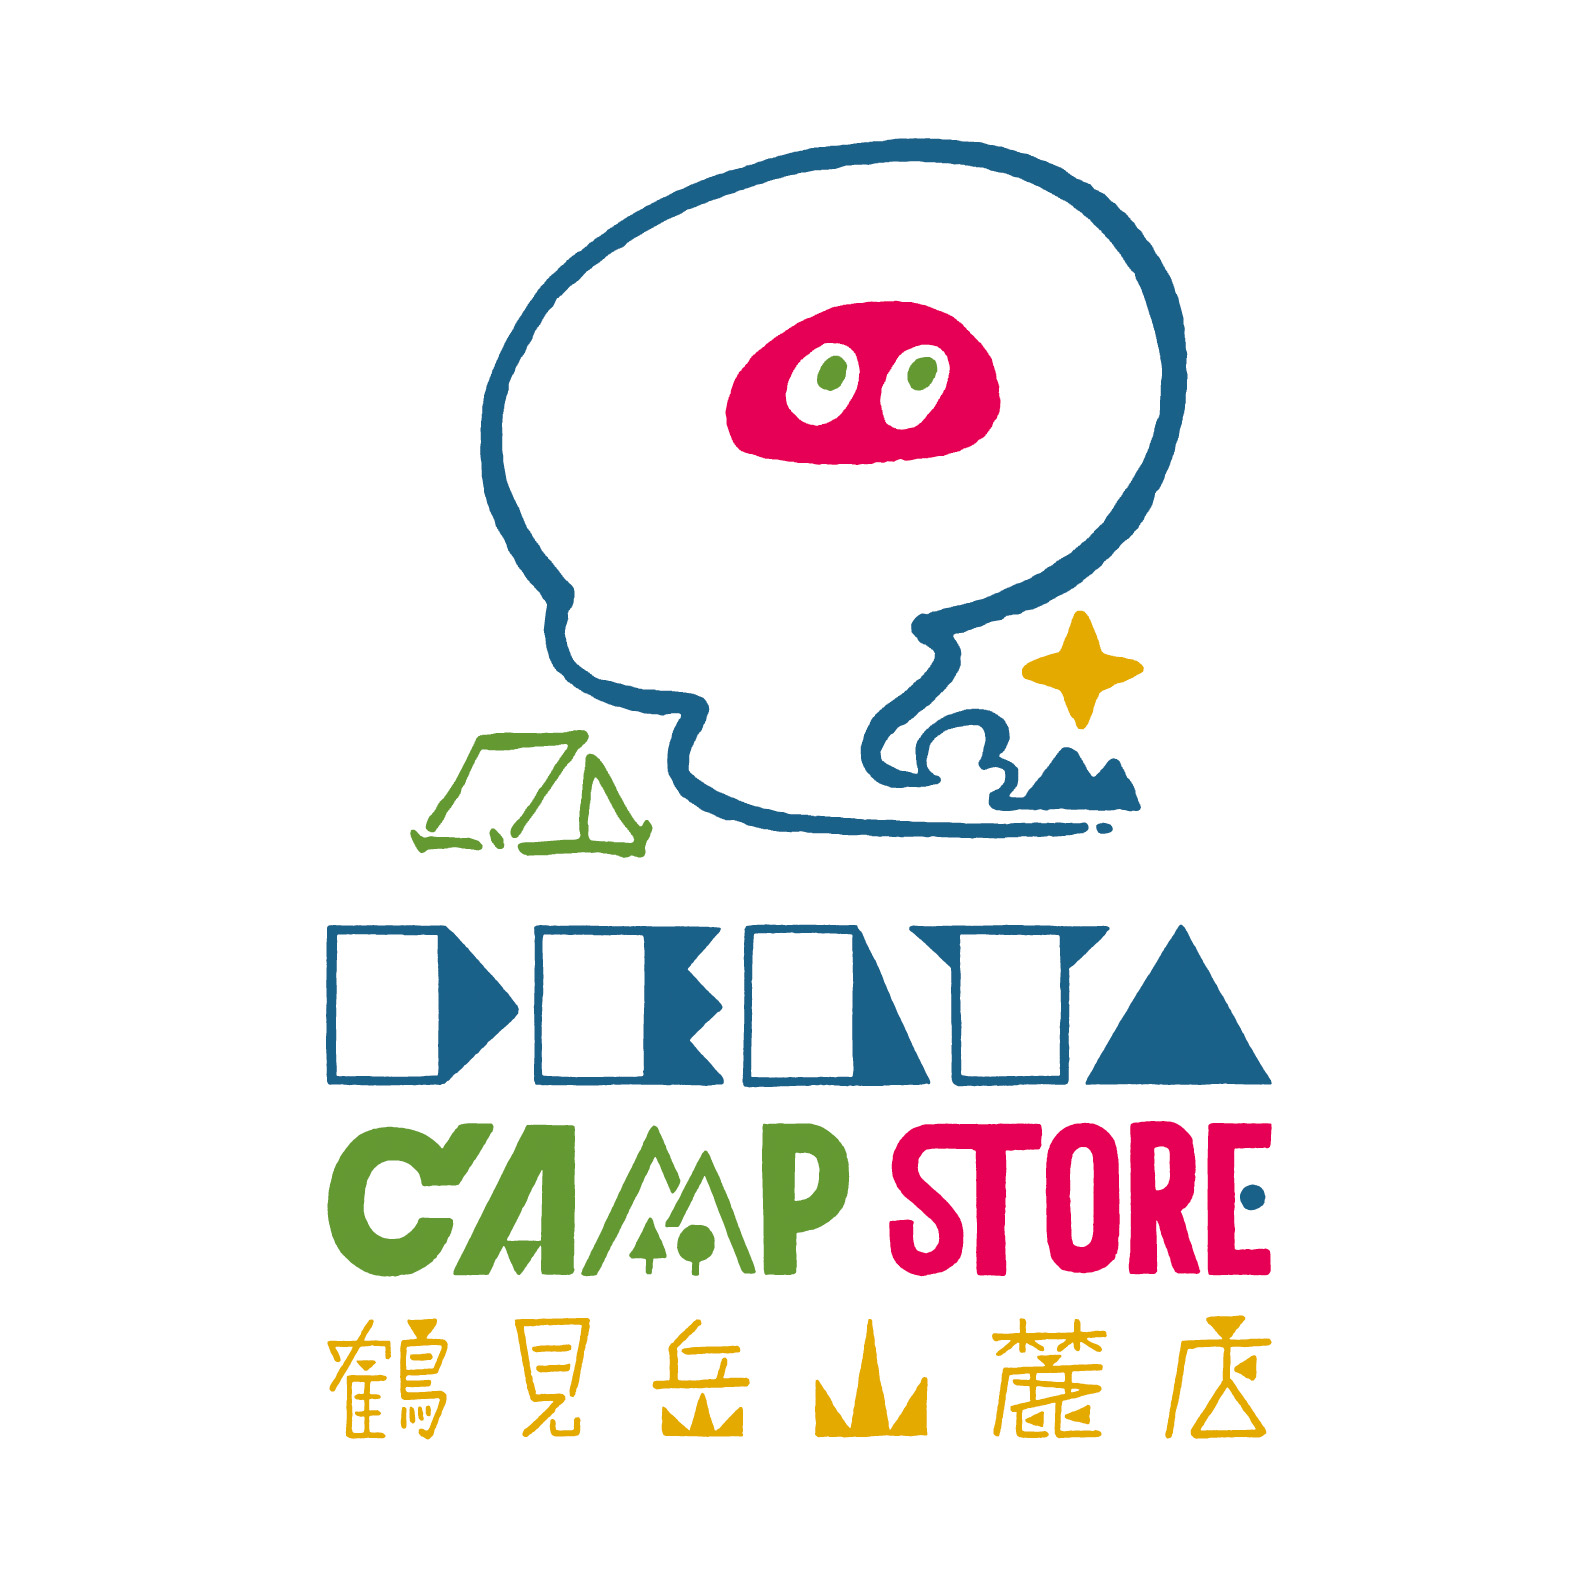 deltacampstore-logo